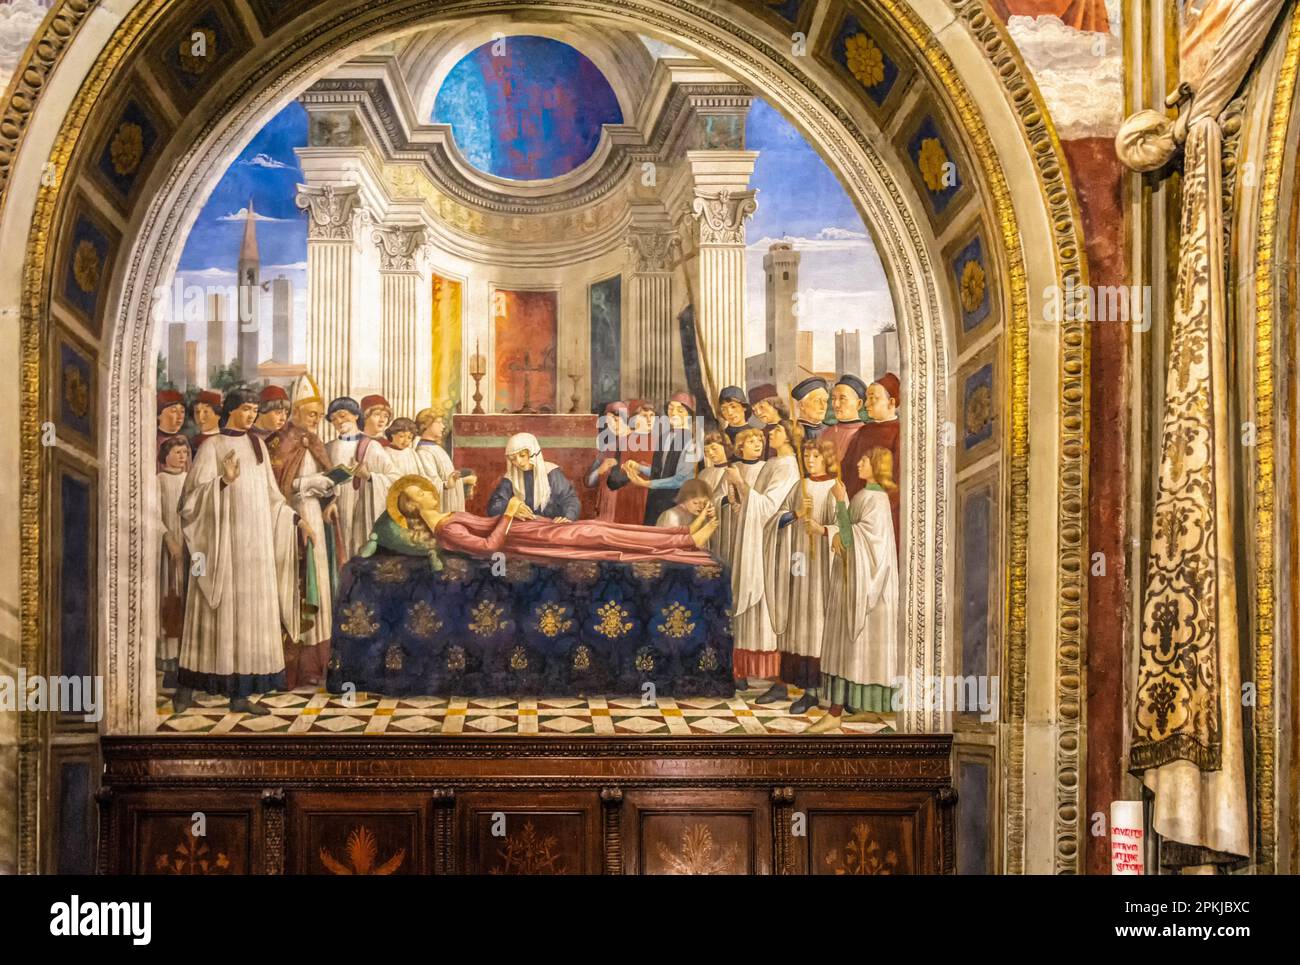 Collégiale de Santa Maria Assunta, San Gimignano - intérieur de l'église : Domenico Ghirlandaio, fresque Renaissance de la funéraire de Saint Fina) Banque D'Images